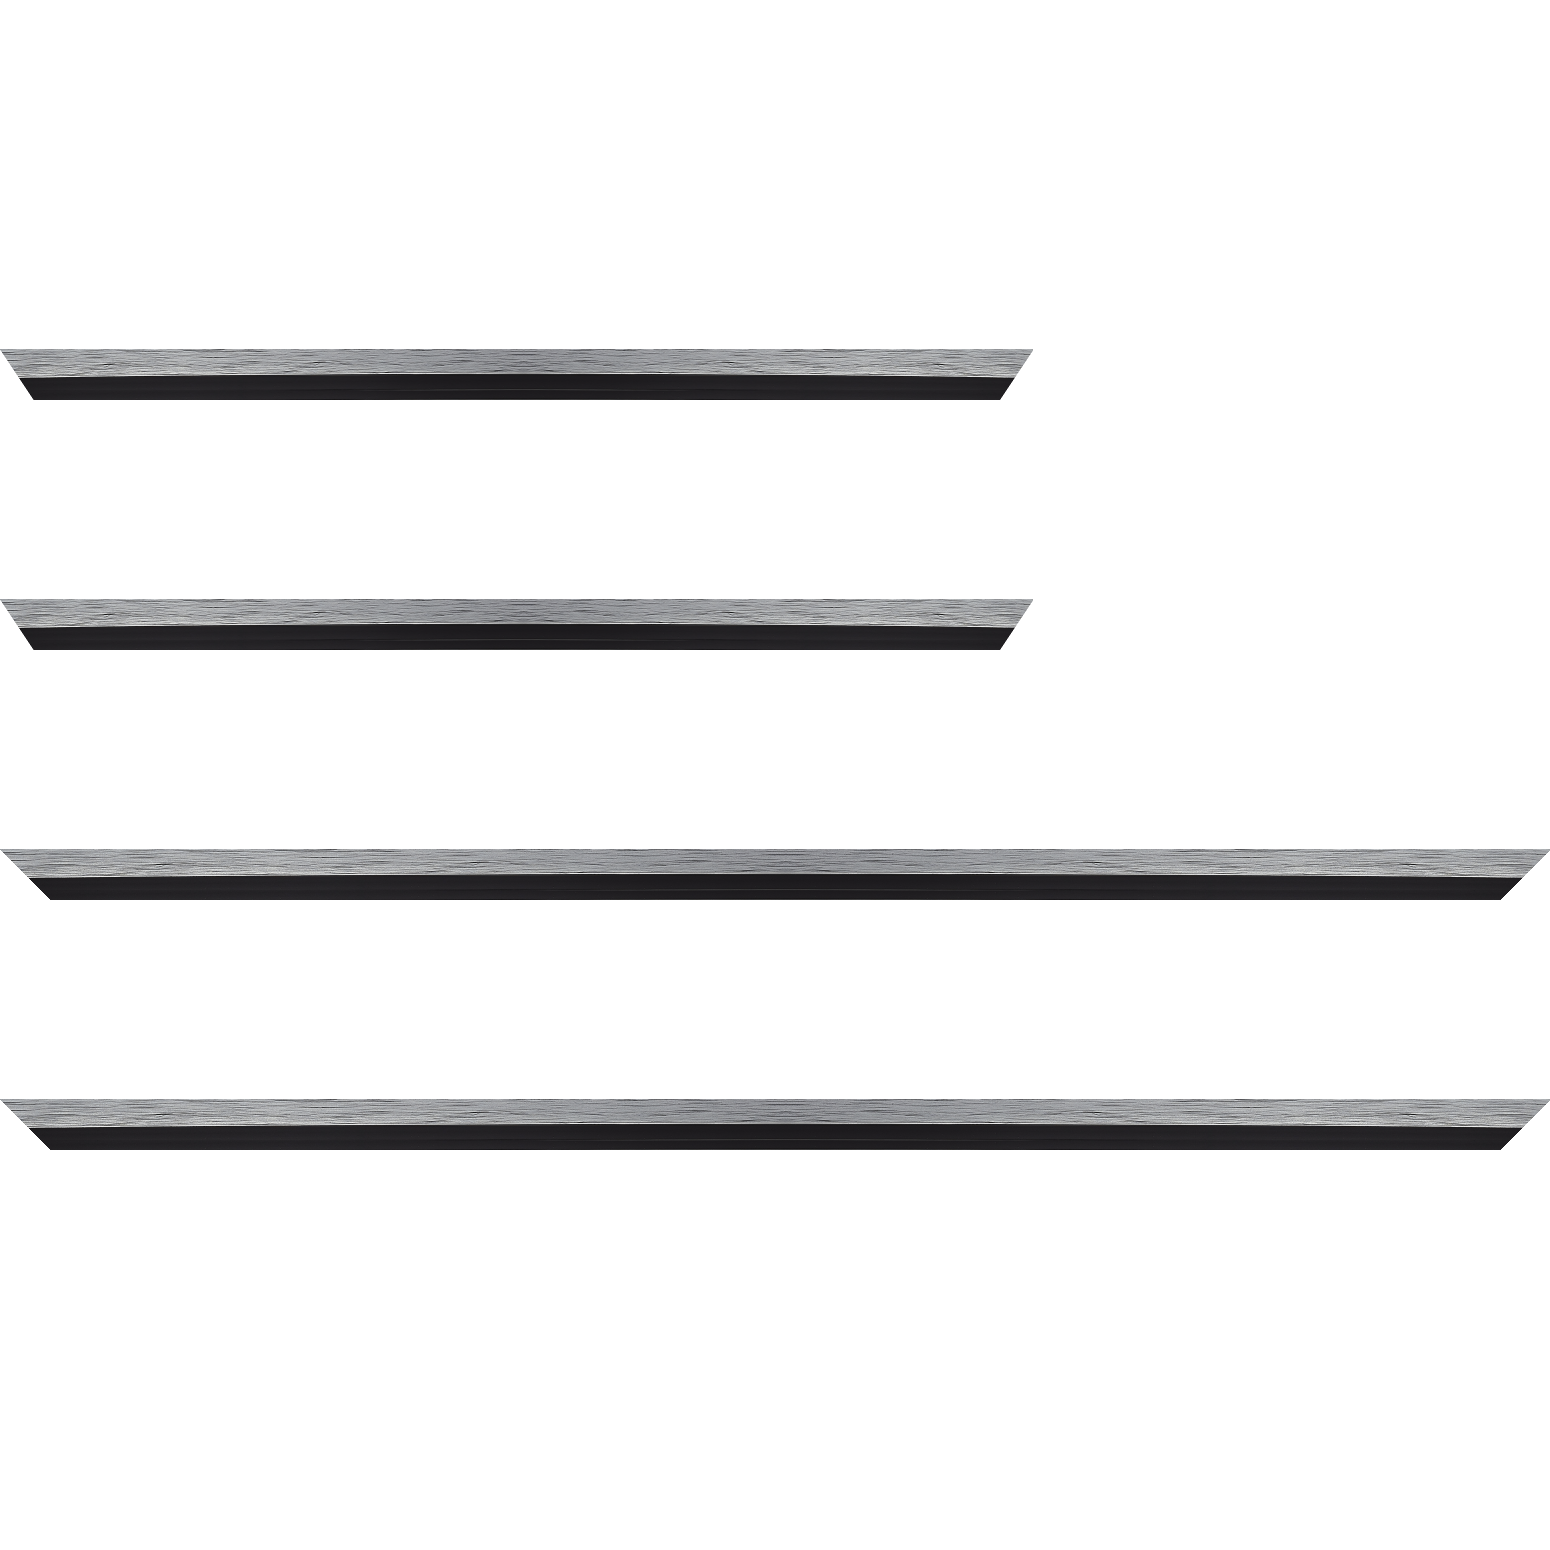 Baguette service précoupé Bois profil plat largeur 1.6cm couleur argent contemporain filet noir en retrait de la face du cadre de 6mm assurant un effet très original